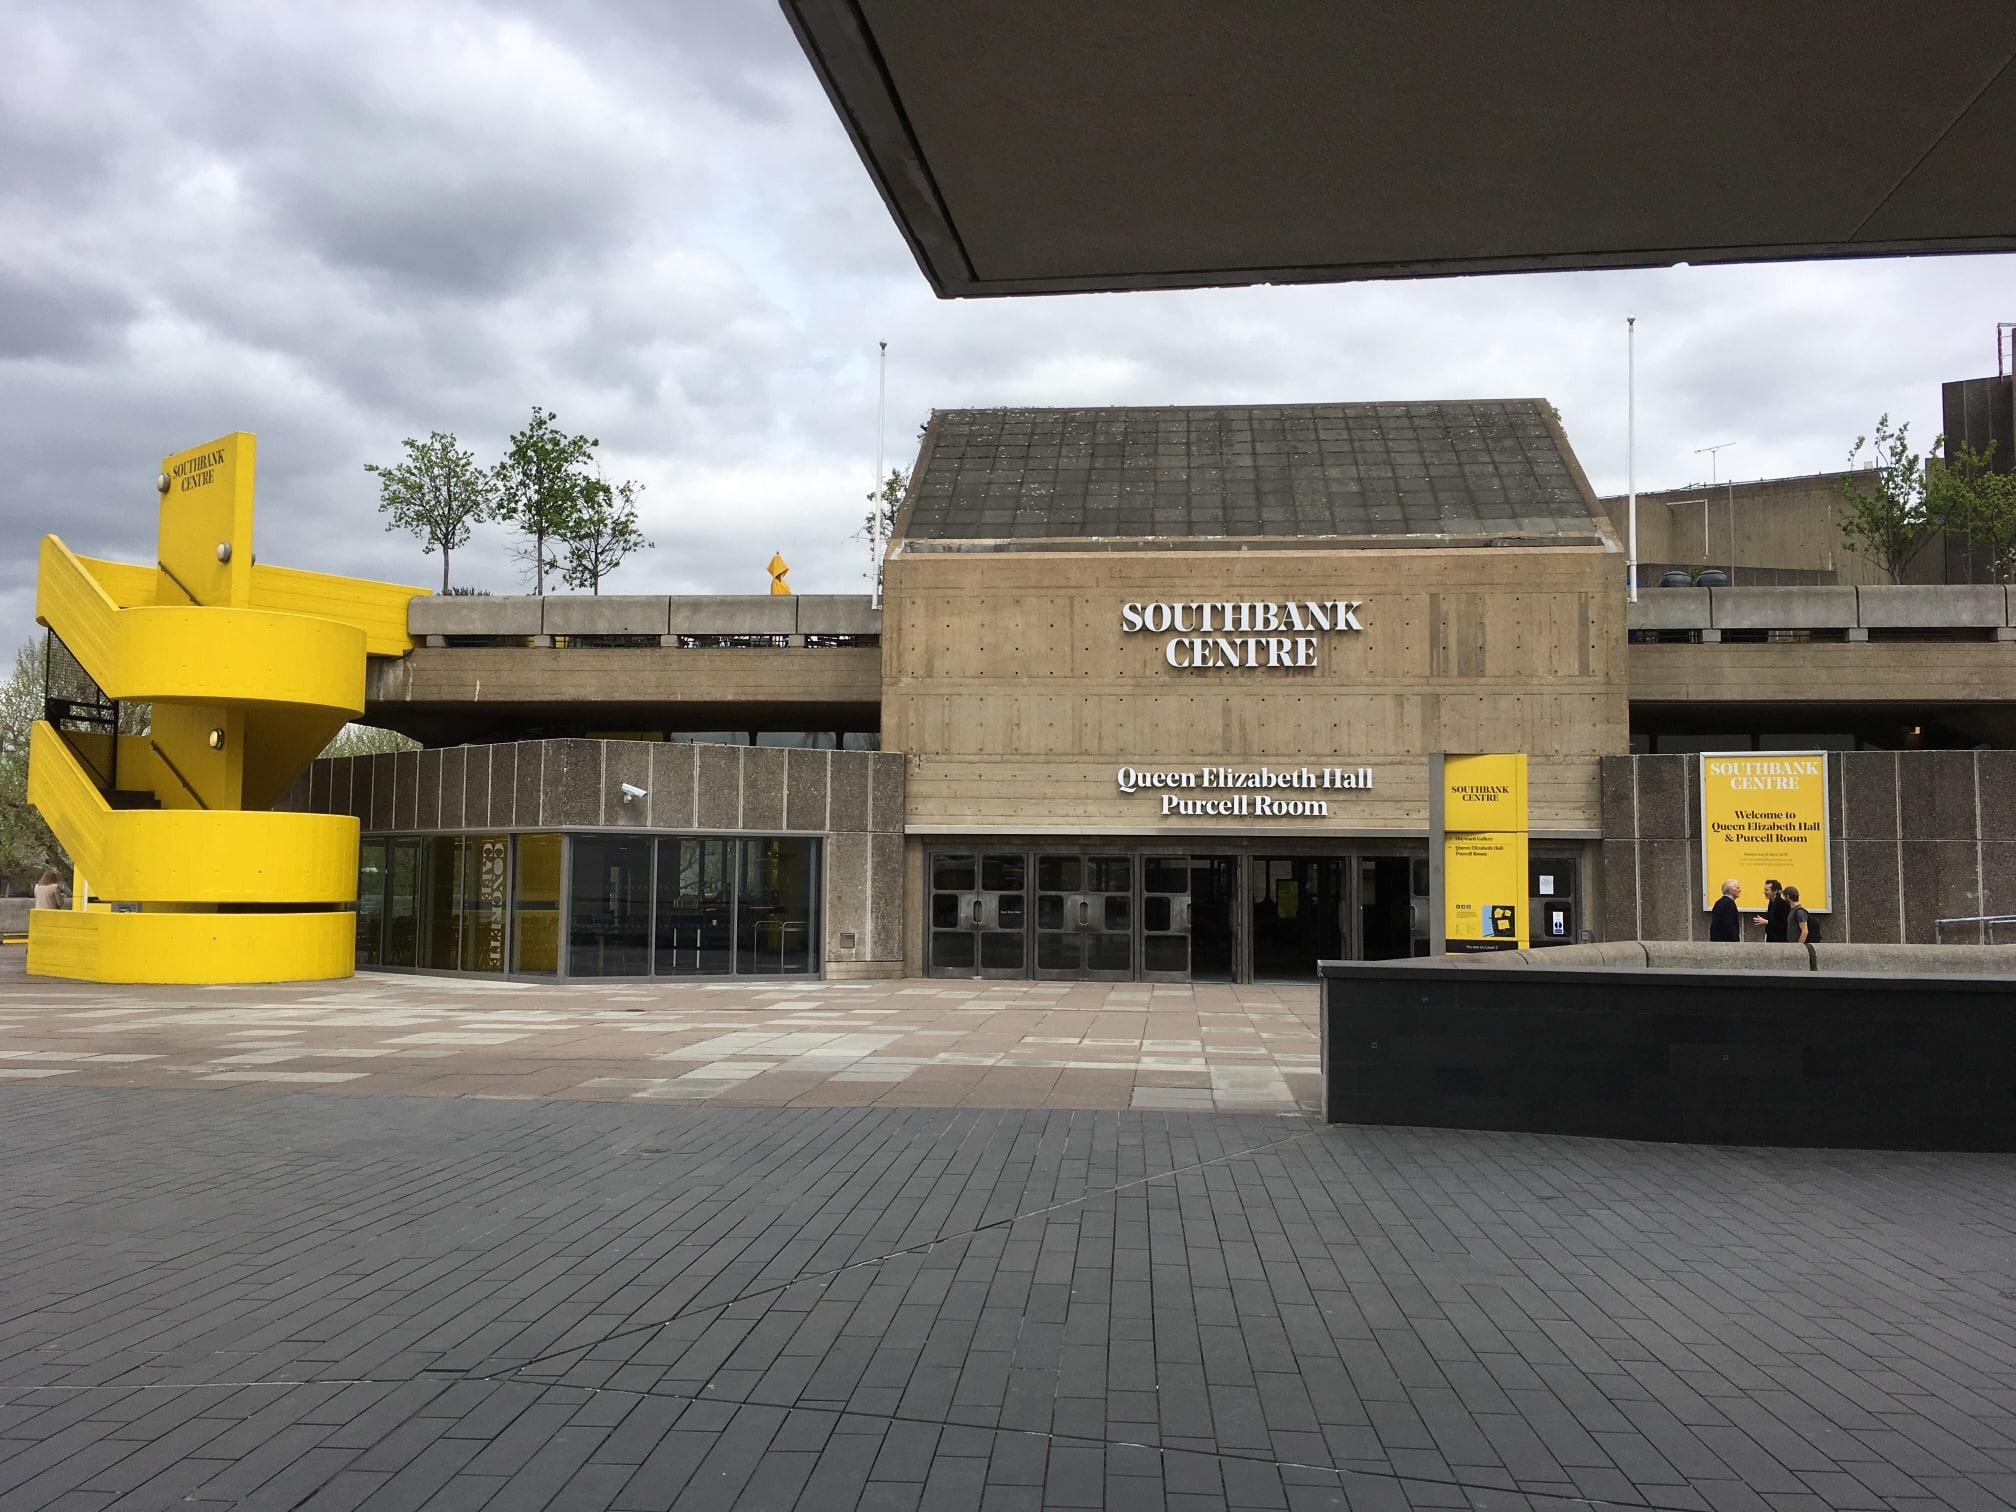 Das Londoner Southbank Centre aus den späten 1960er Jahren ist ein Beispiel für brutalistische Architektur. Quelle: Saval, CC BY-SA 4.0 , via Wikimedia Commons